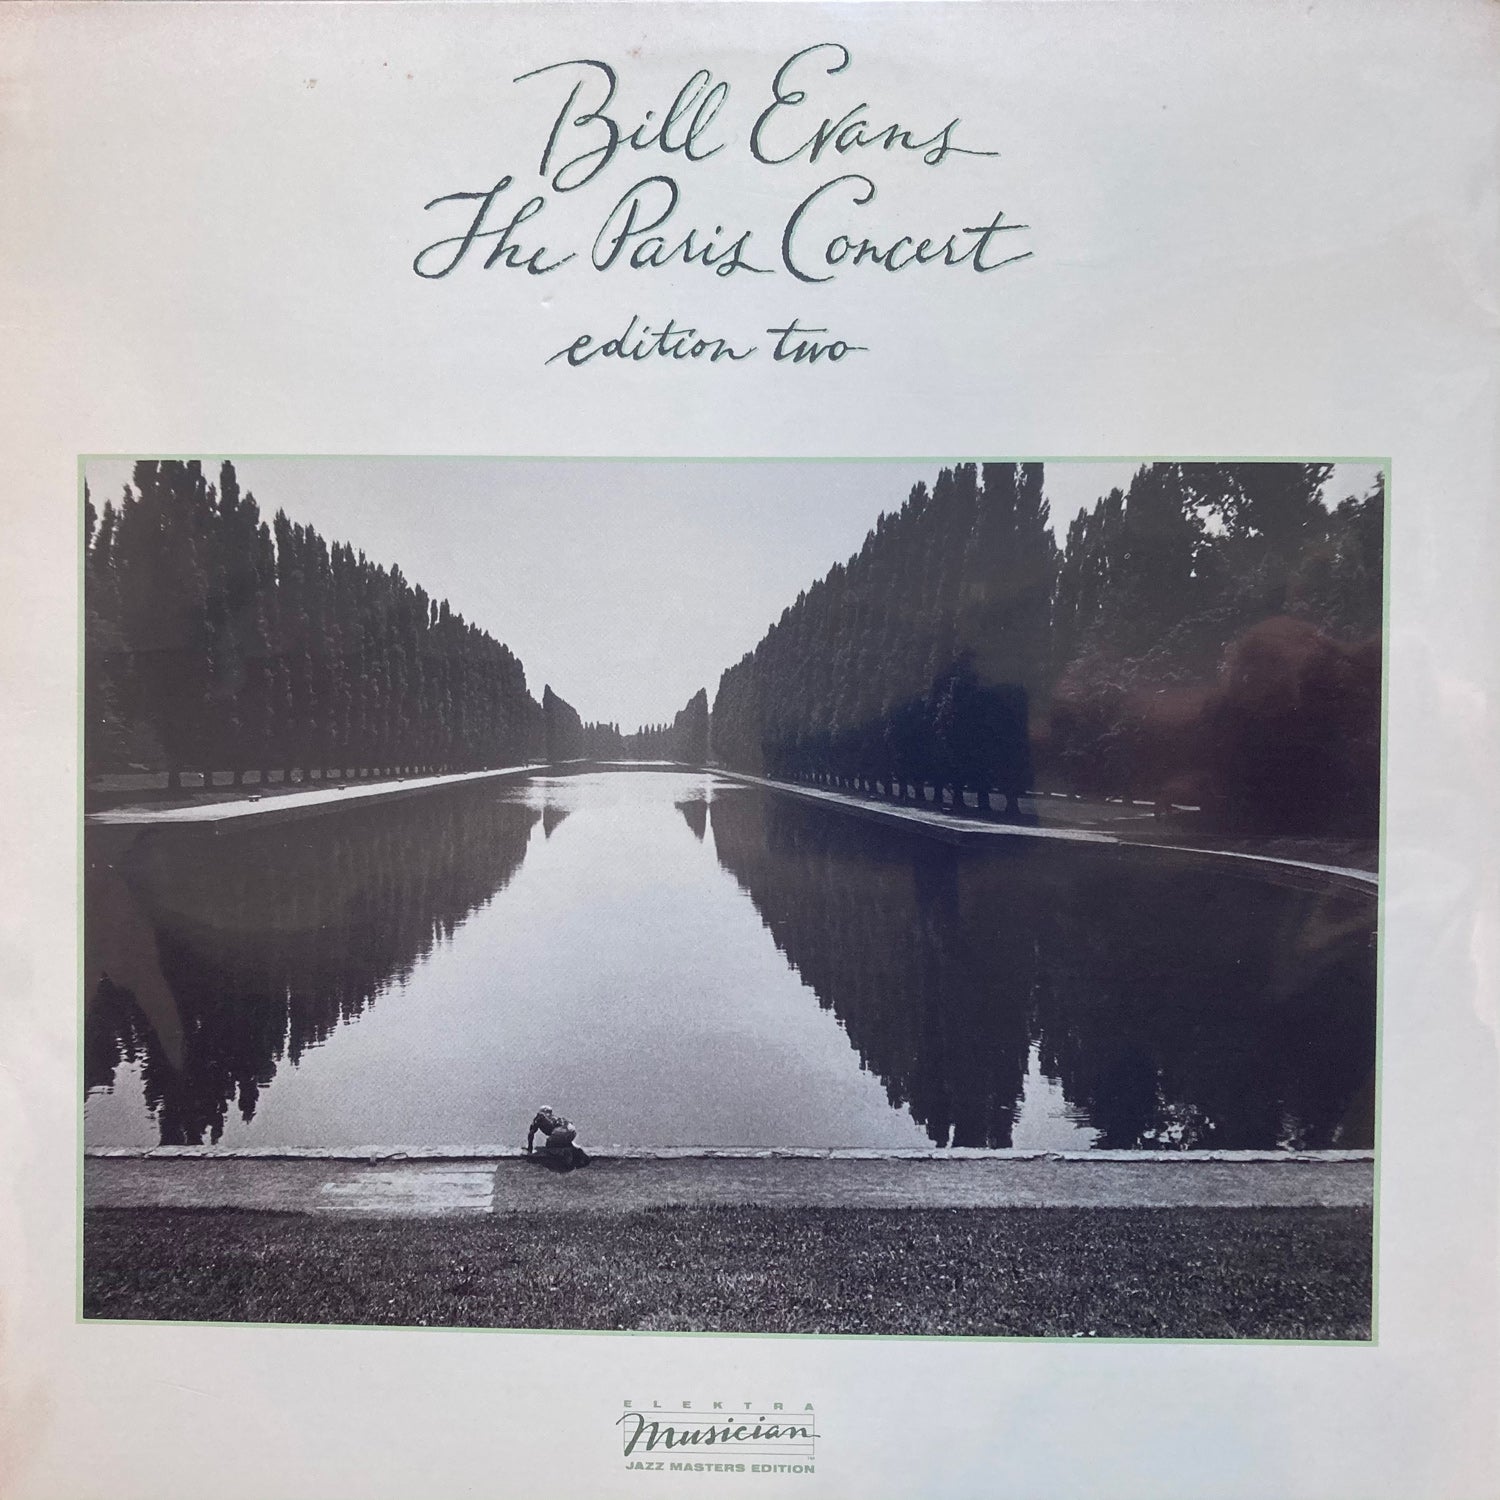 Bill Evans - The Paris Concert edition two